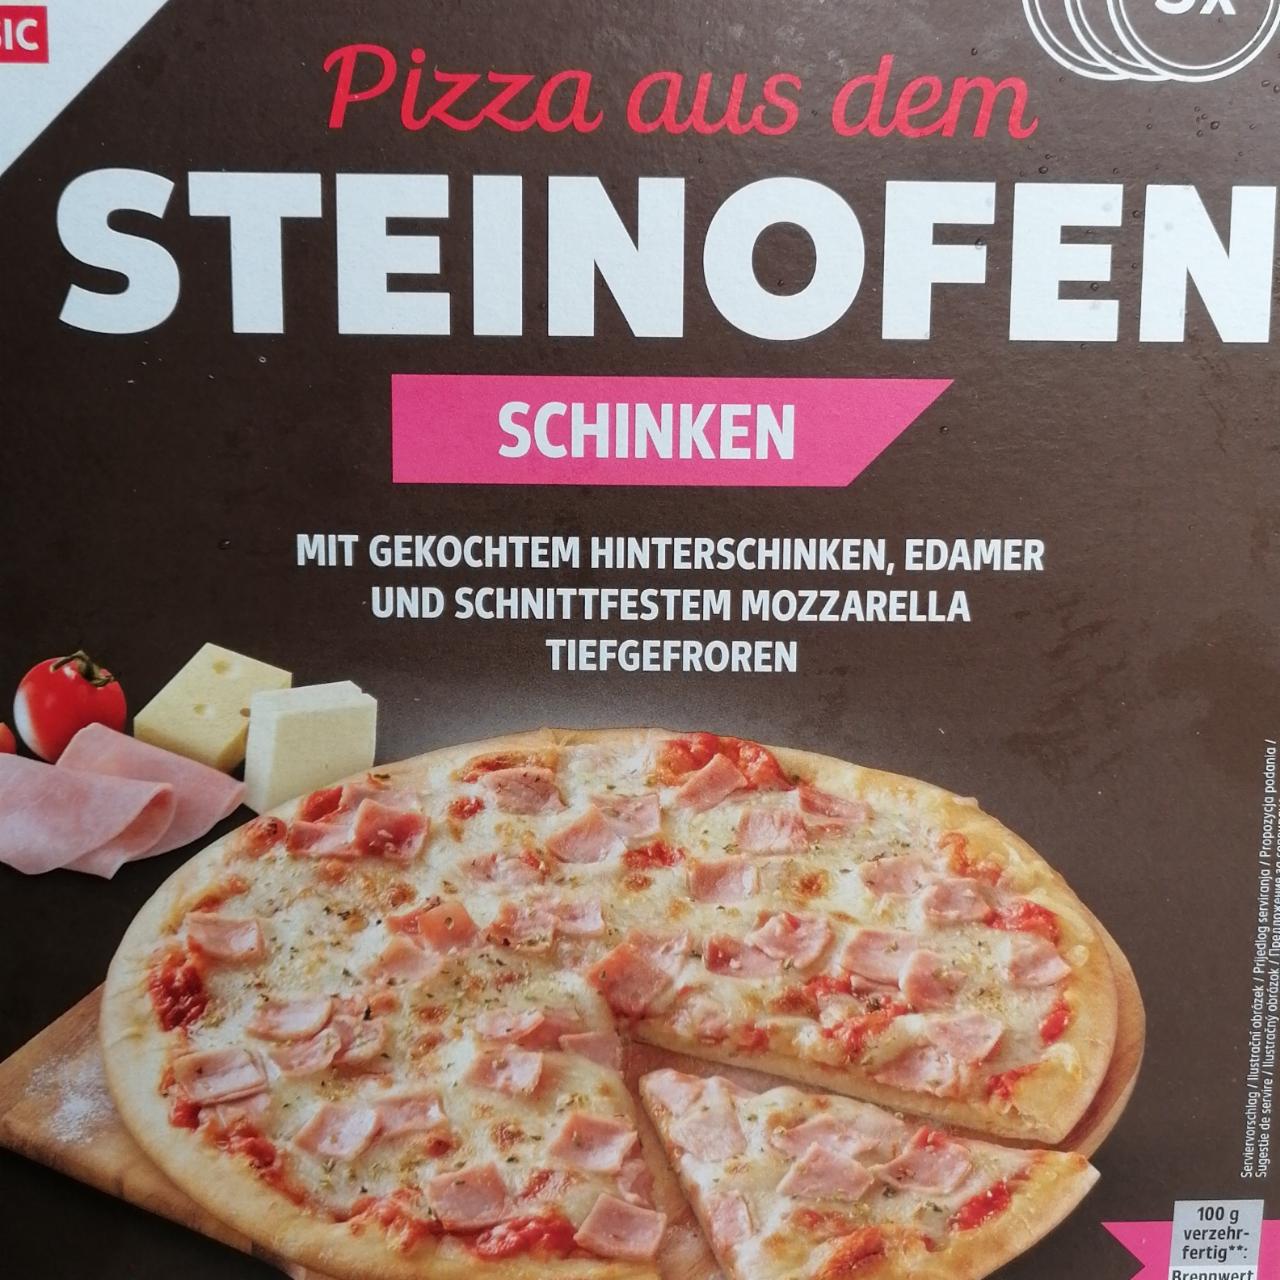 Fotografie - Pizza aus dem Steinofen Schinken K-Classic